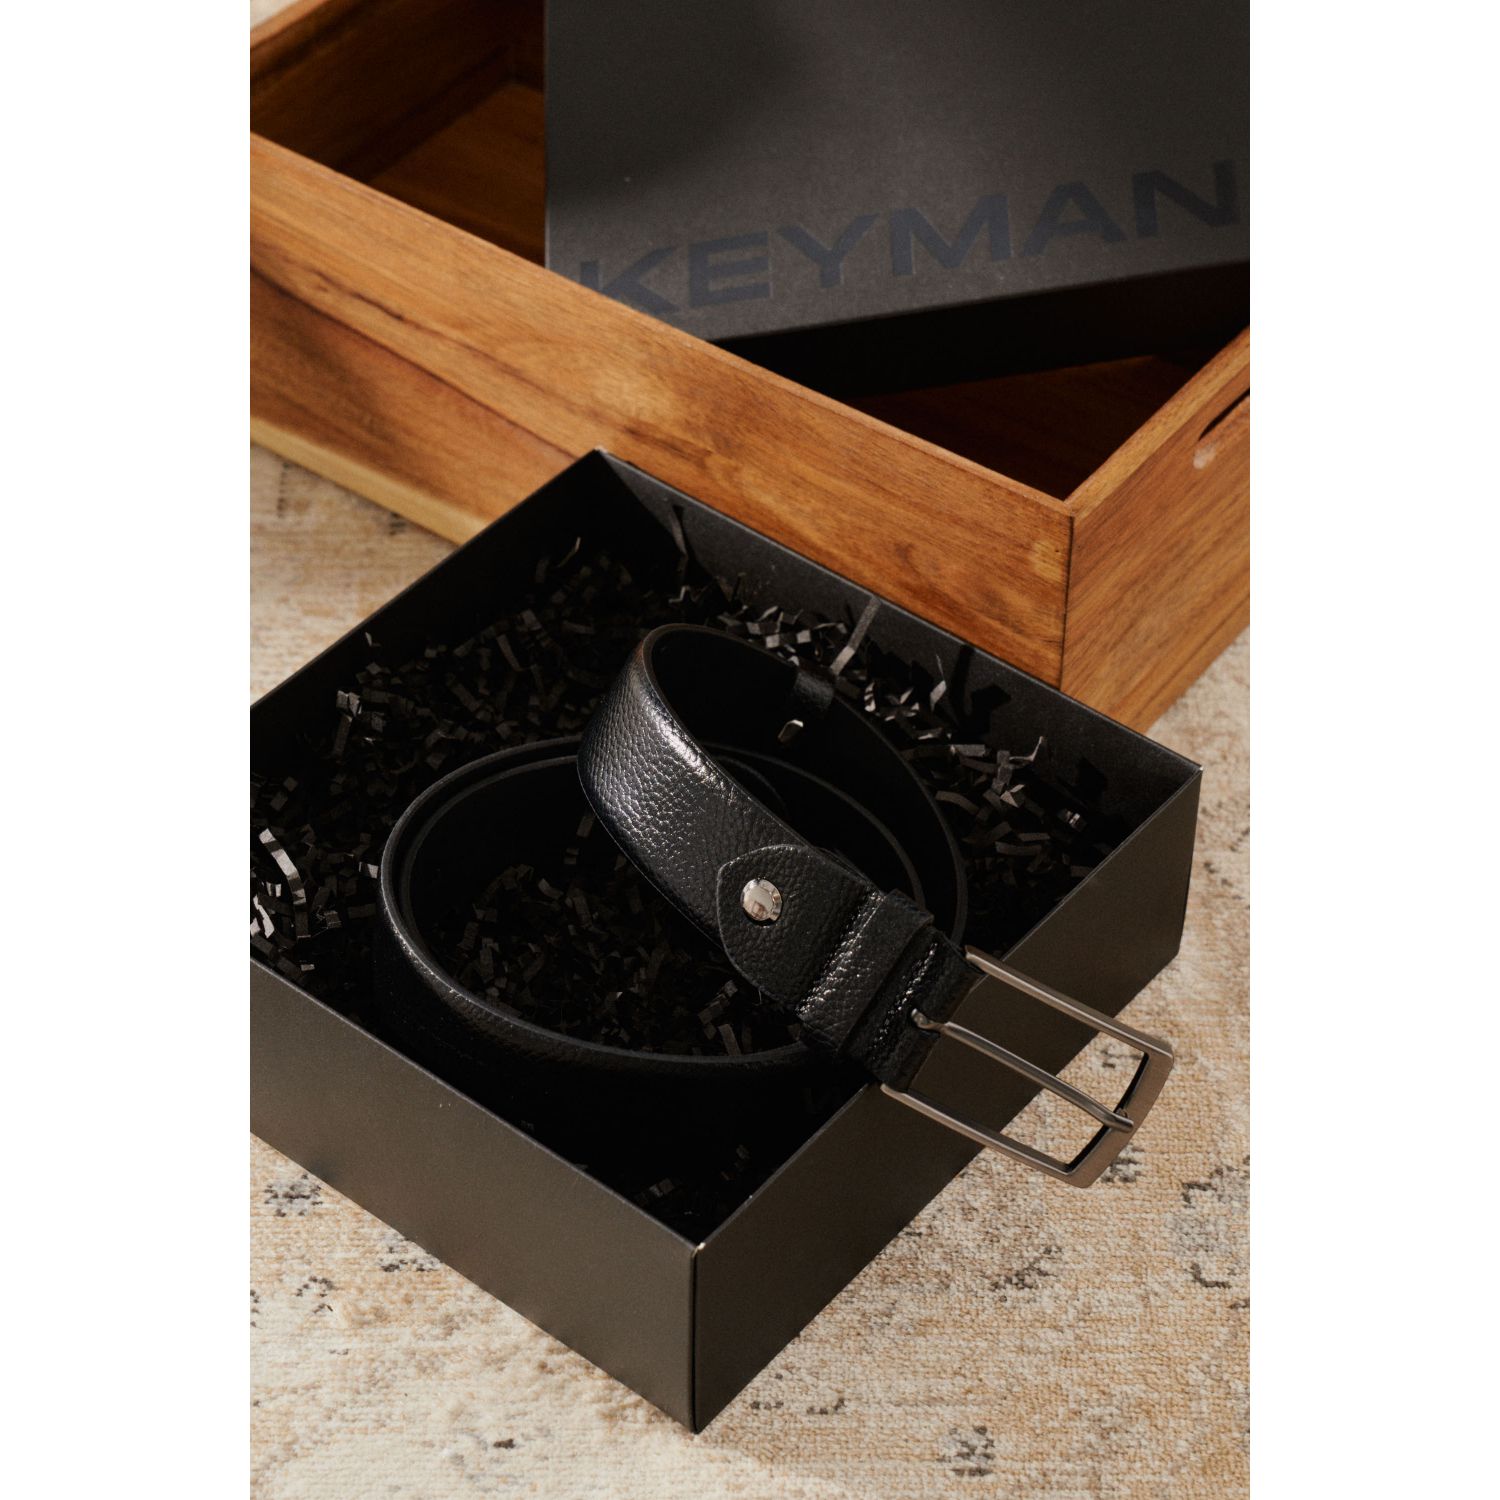 Пример подарочного набора Keyman (фирменная коробочка и черный ремень)